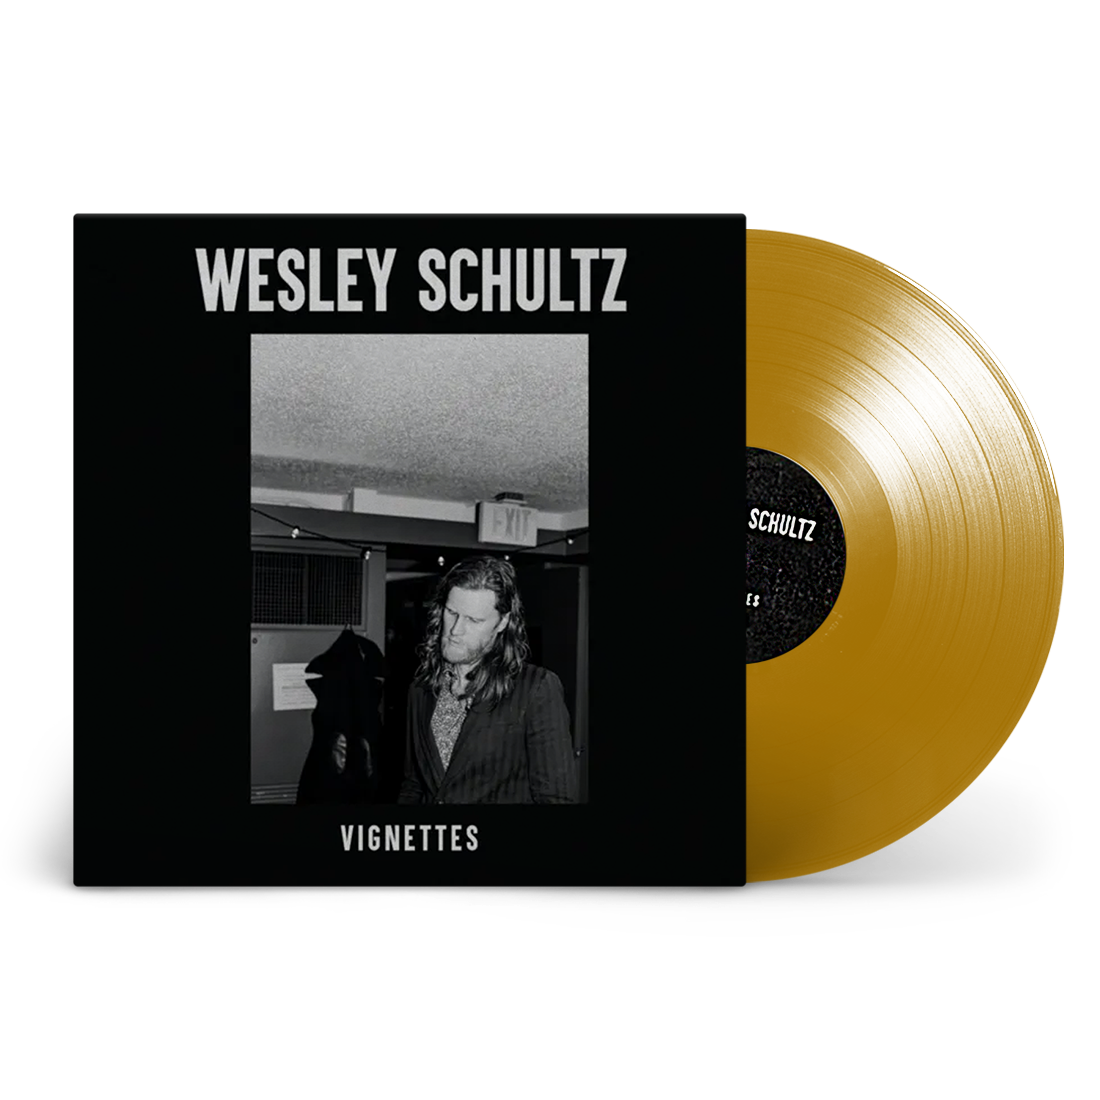 Wesley Schultz - Vignettes: Limited Edition Gold Vinyl LP